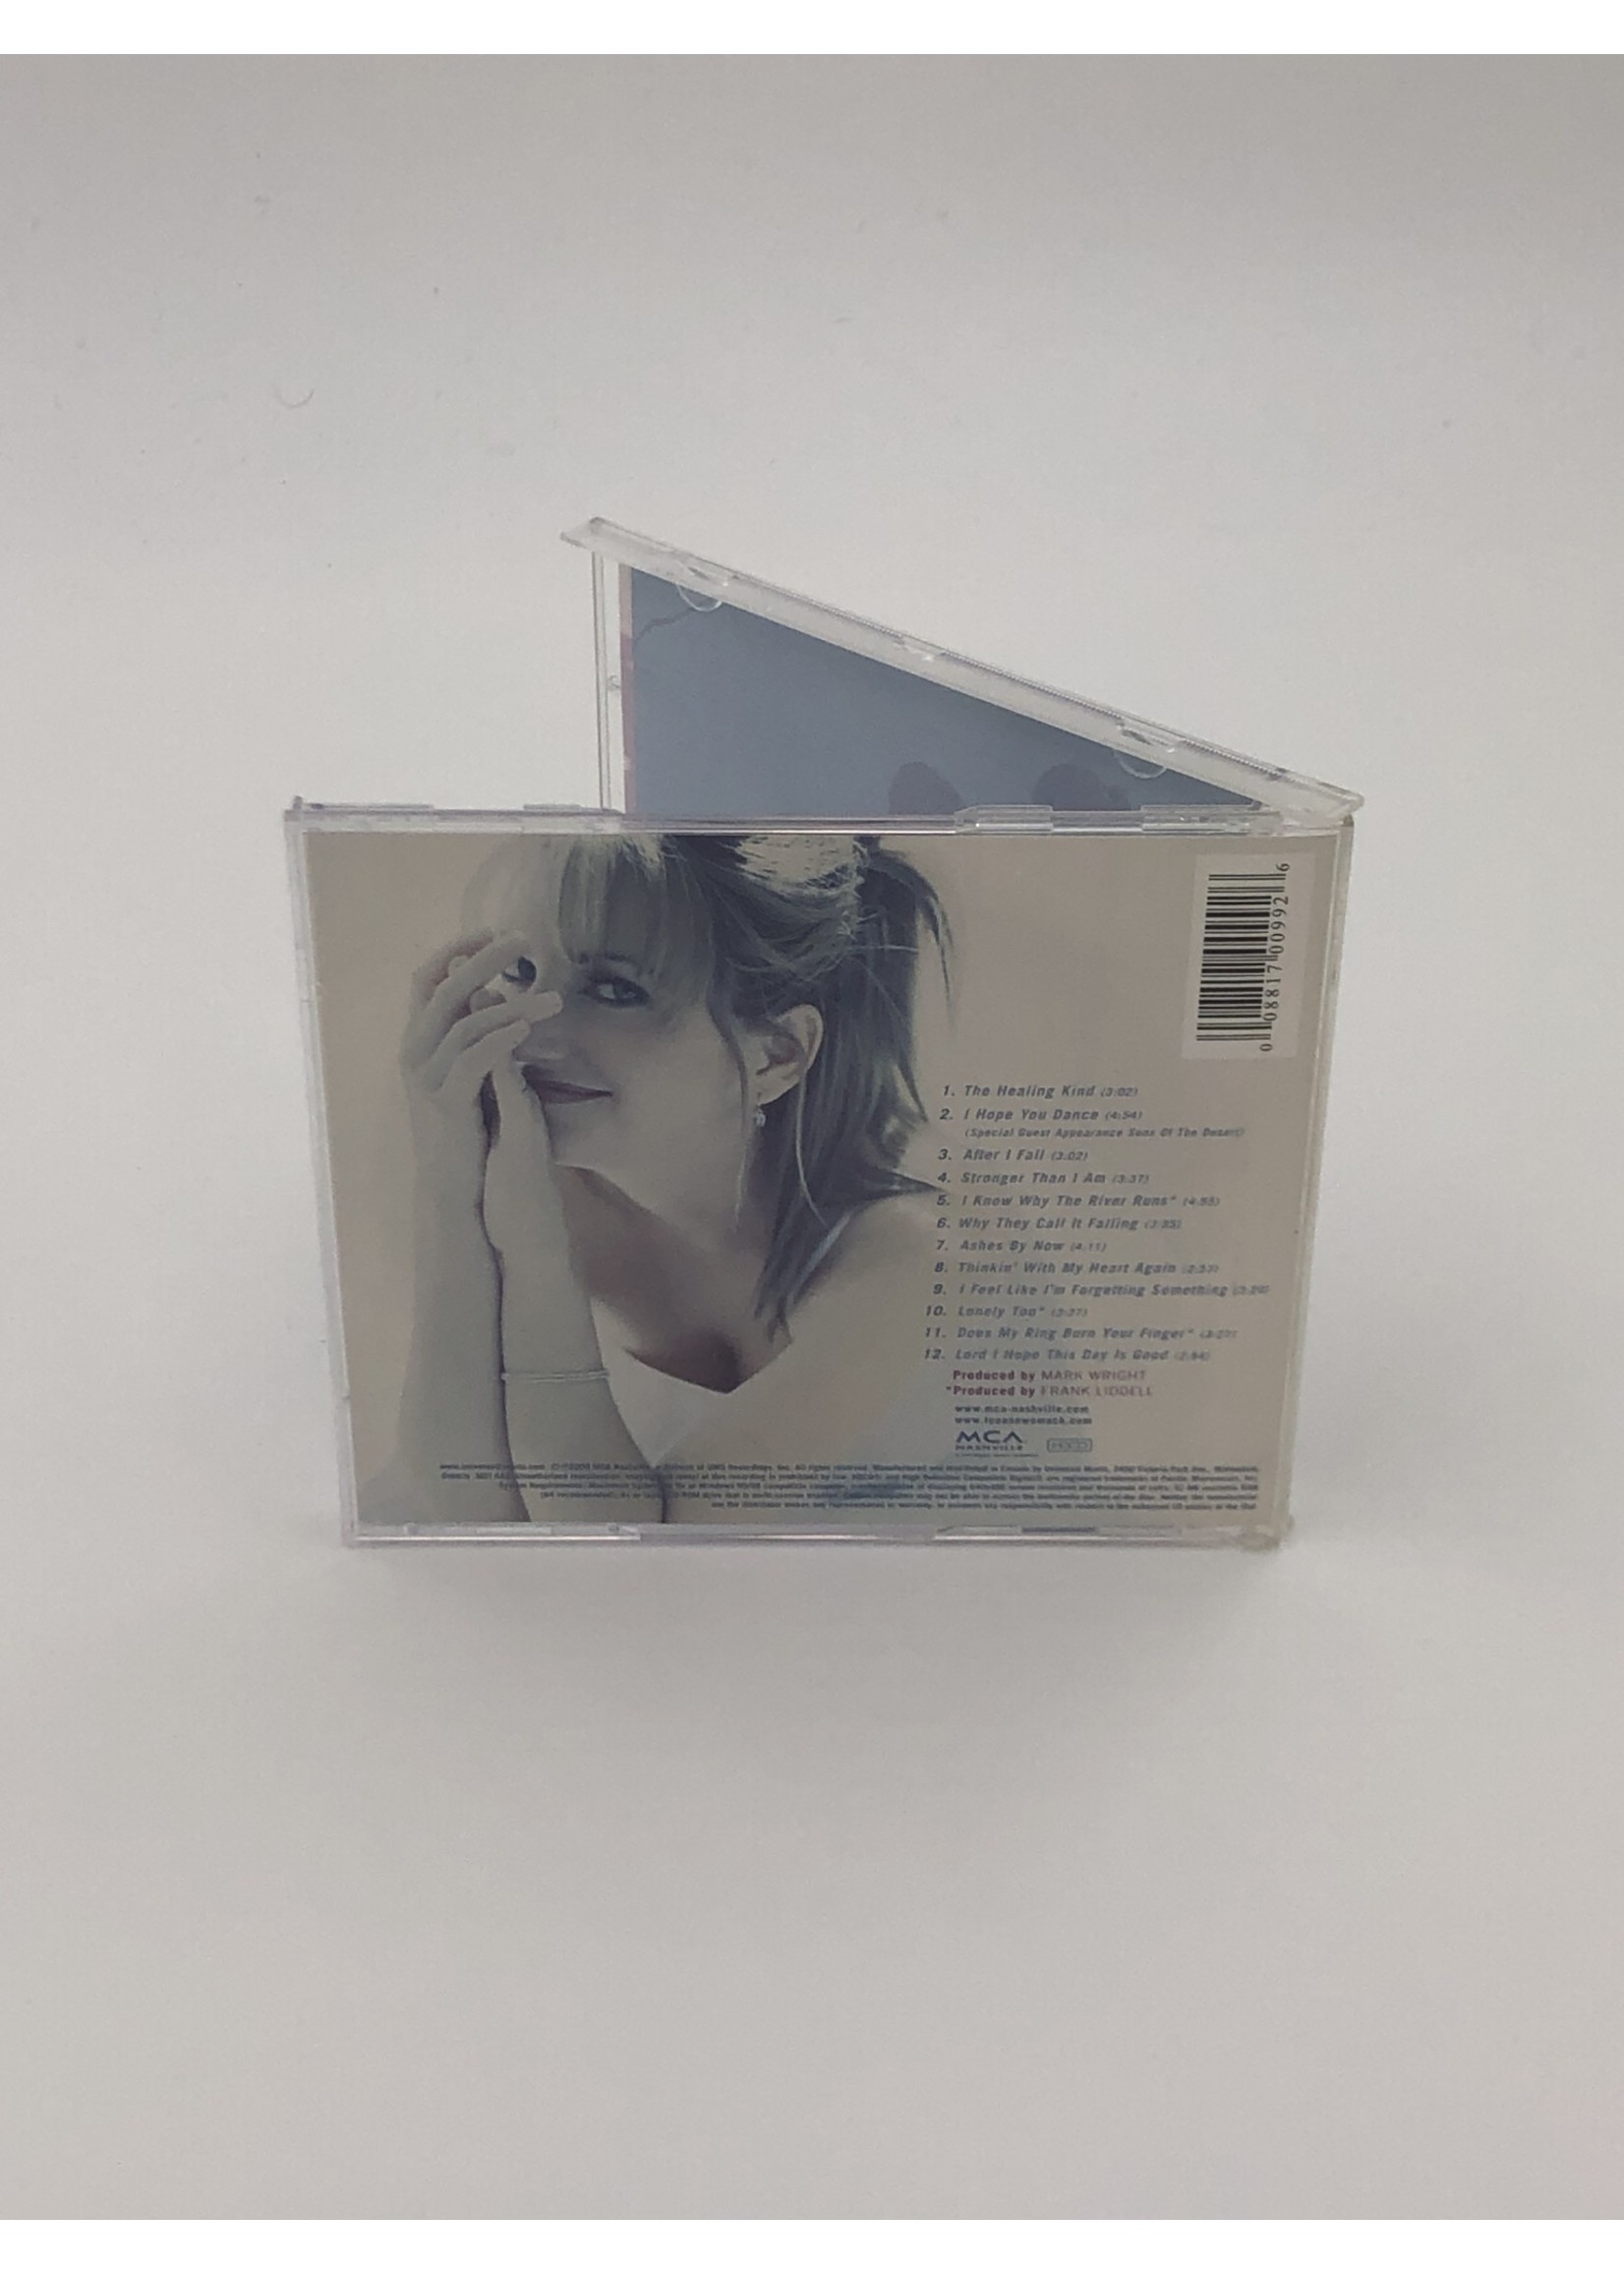 CD Lee Ann Womack: I Hope You Dance CD